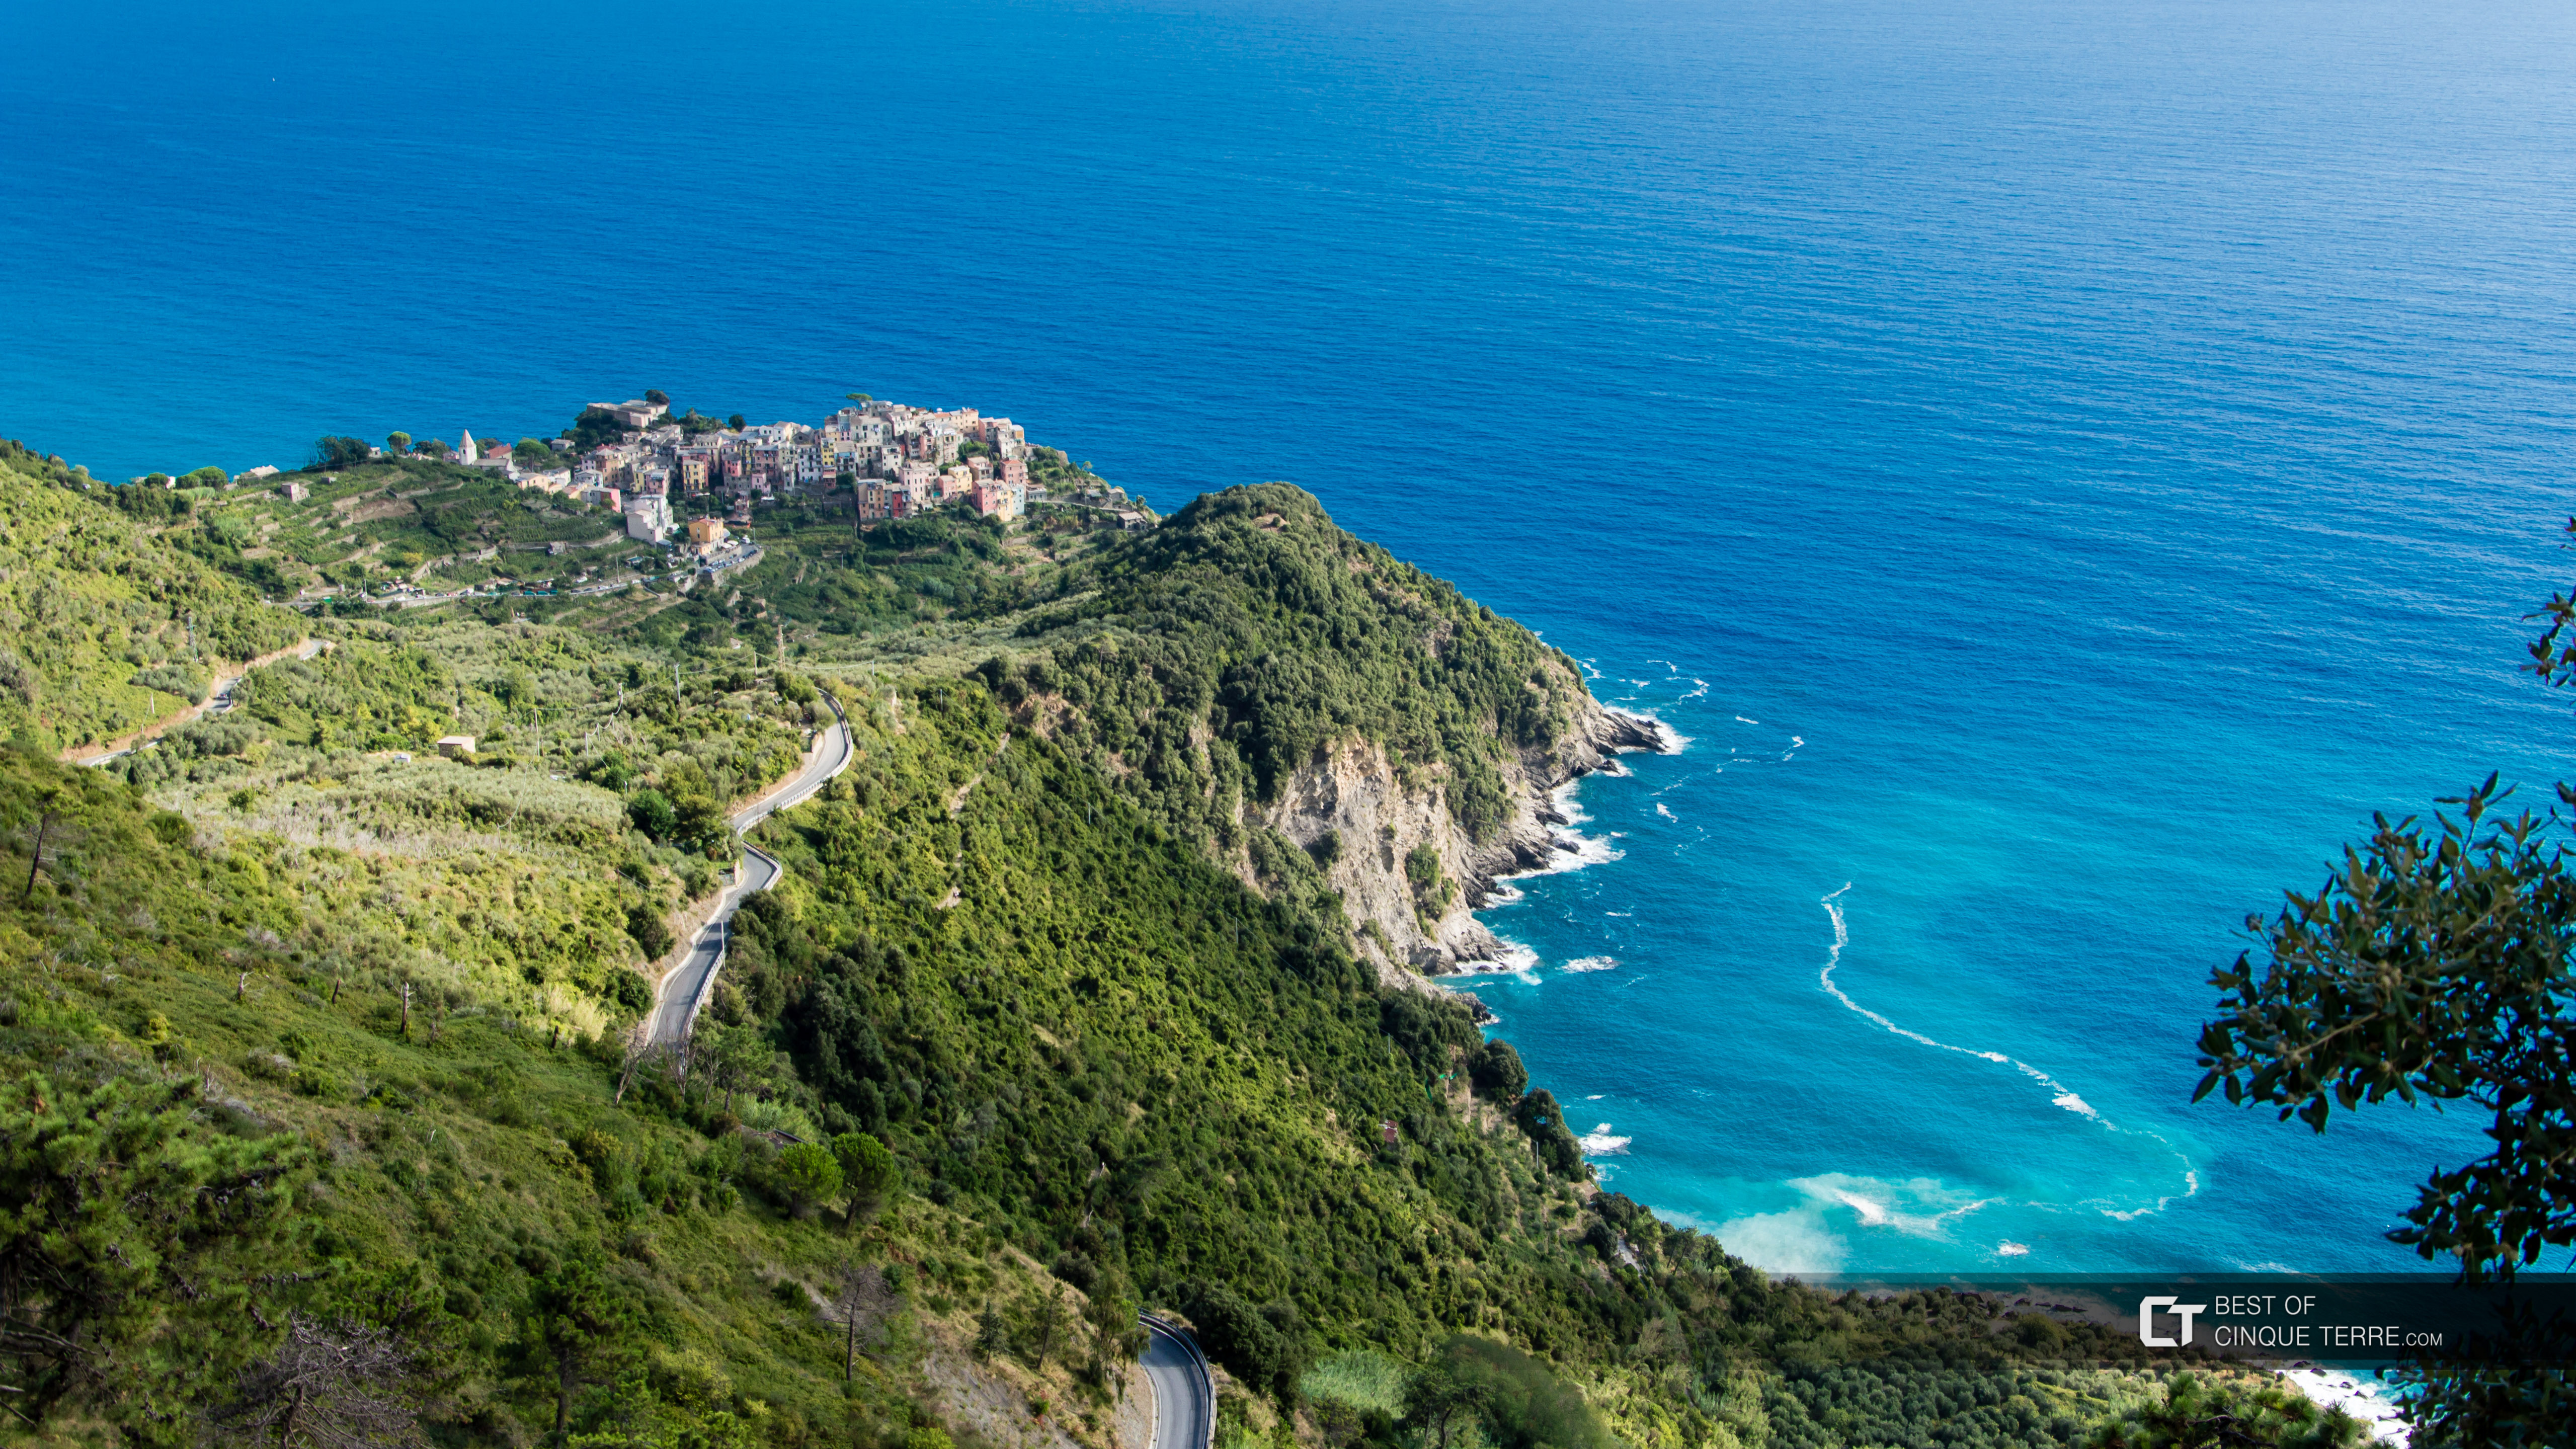 View from the trail Corniglia - San Bernardino - Vernazza, Cinque Terre, Italy